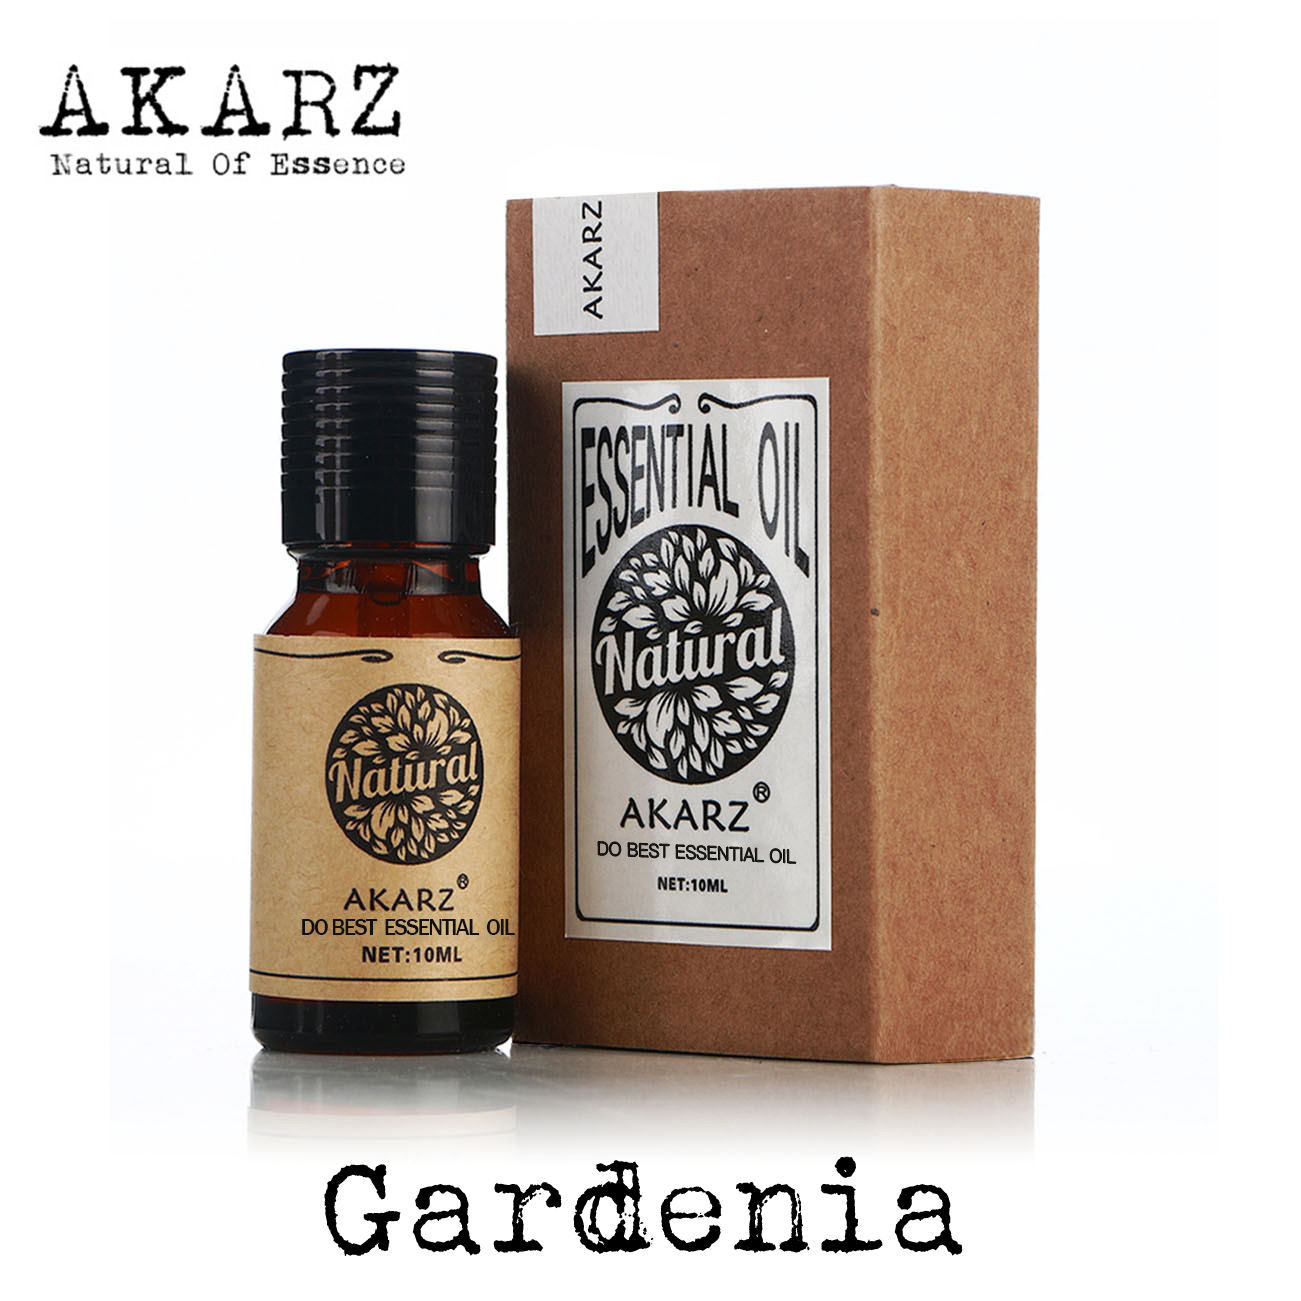 Akarz famosa marca natural gardenia óleo essencial aromaterapia rosto cuidados com a pele corpo